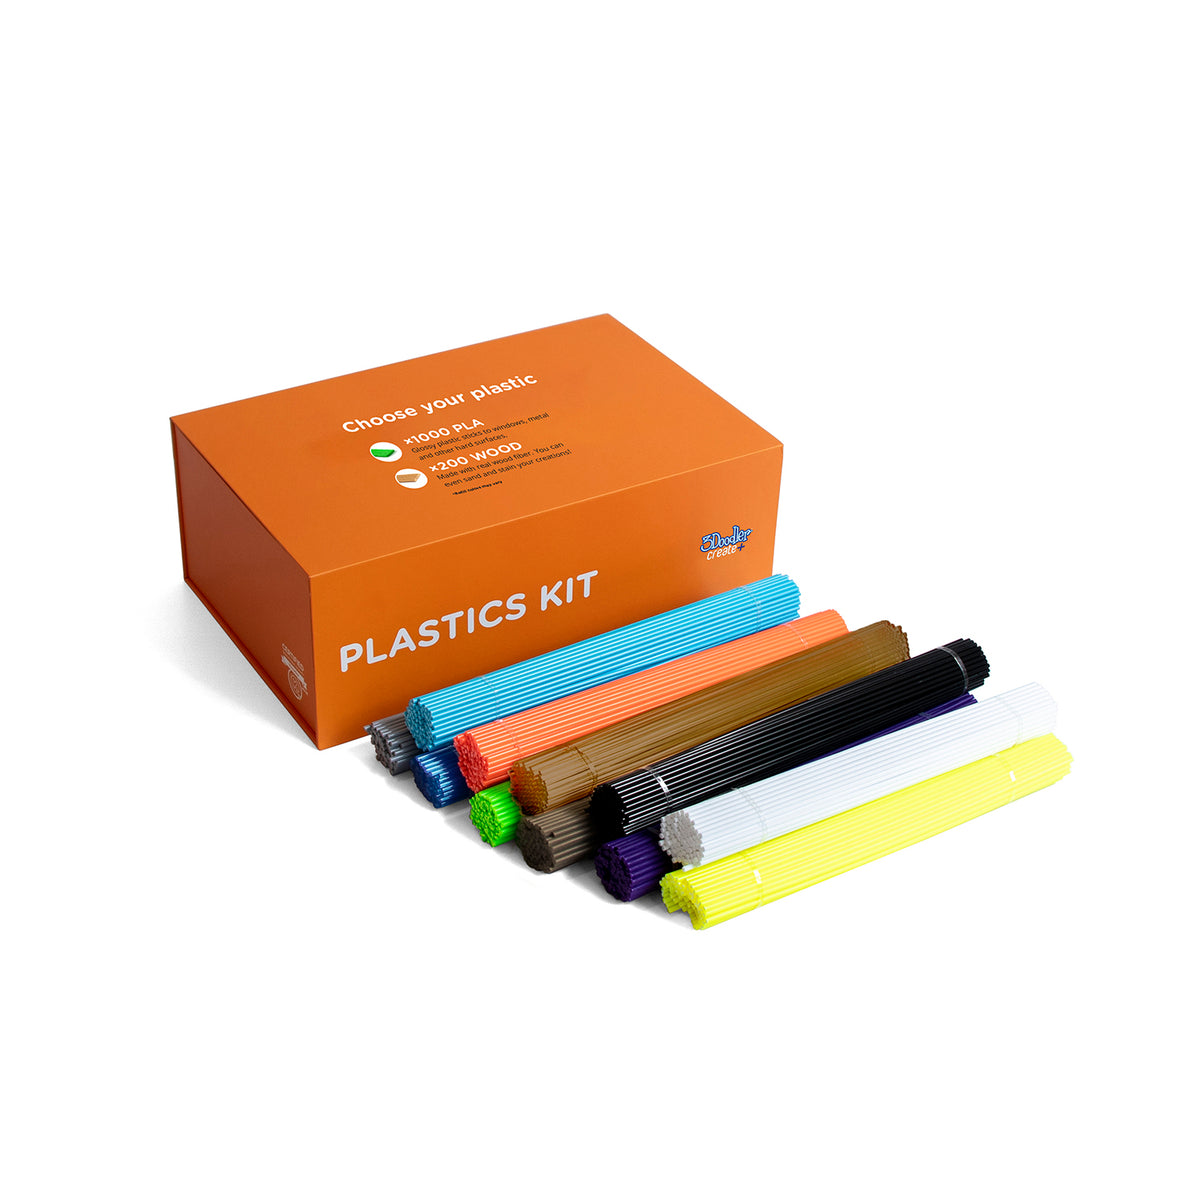 3Doodler EDU Create+ Learning Pack Plastic Kit, 1200 Strands - EDU Plastic